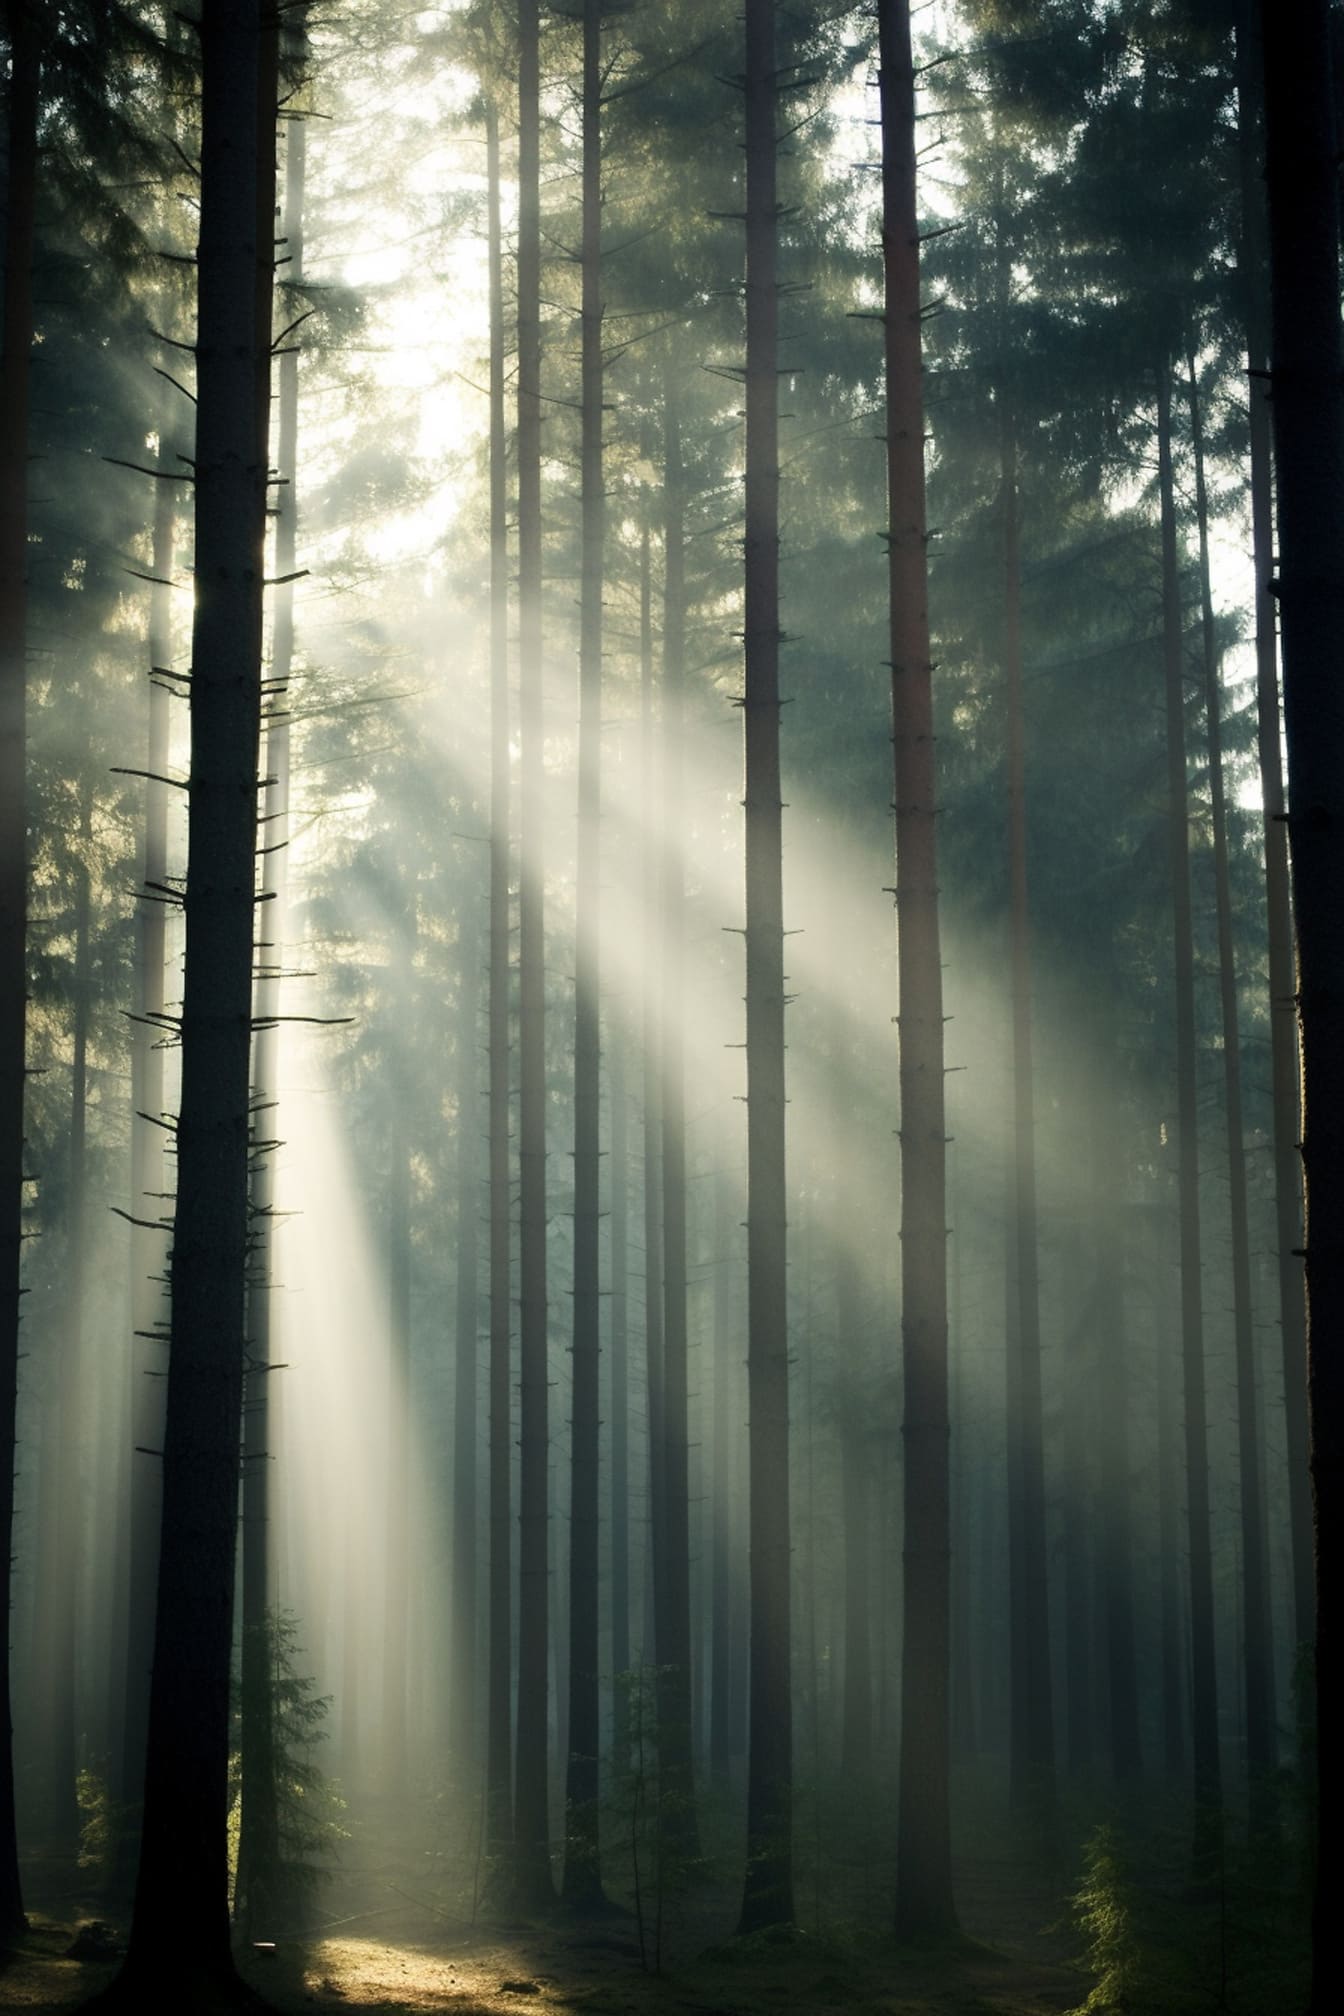 Hutan gelap berkabut dengan cahaya latar buram